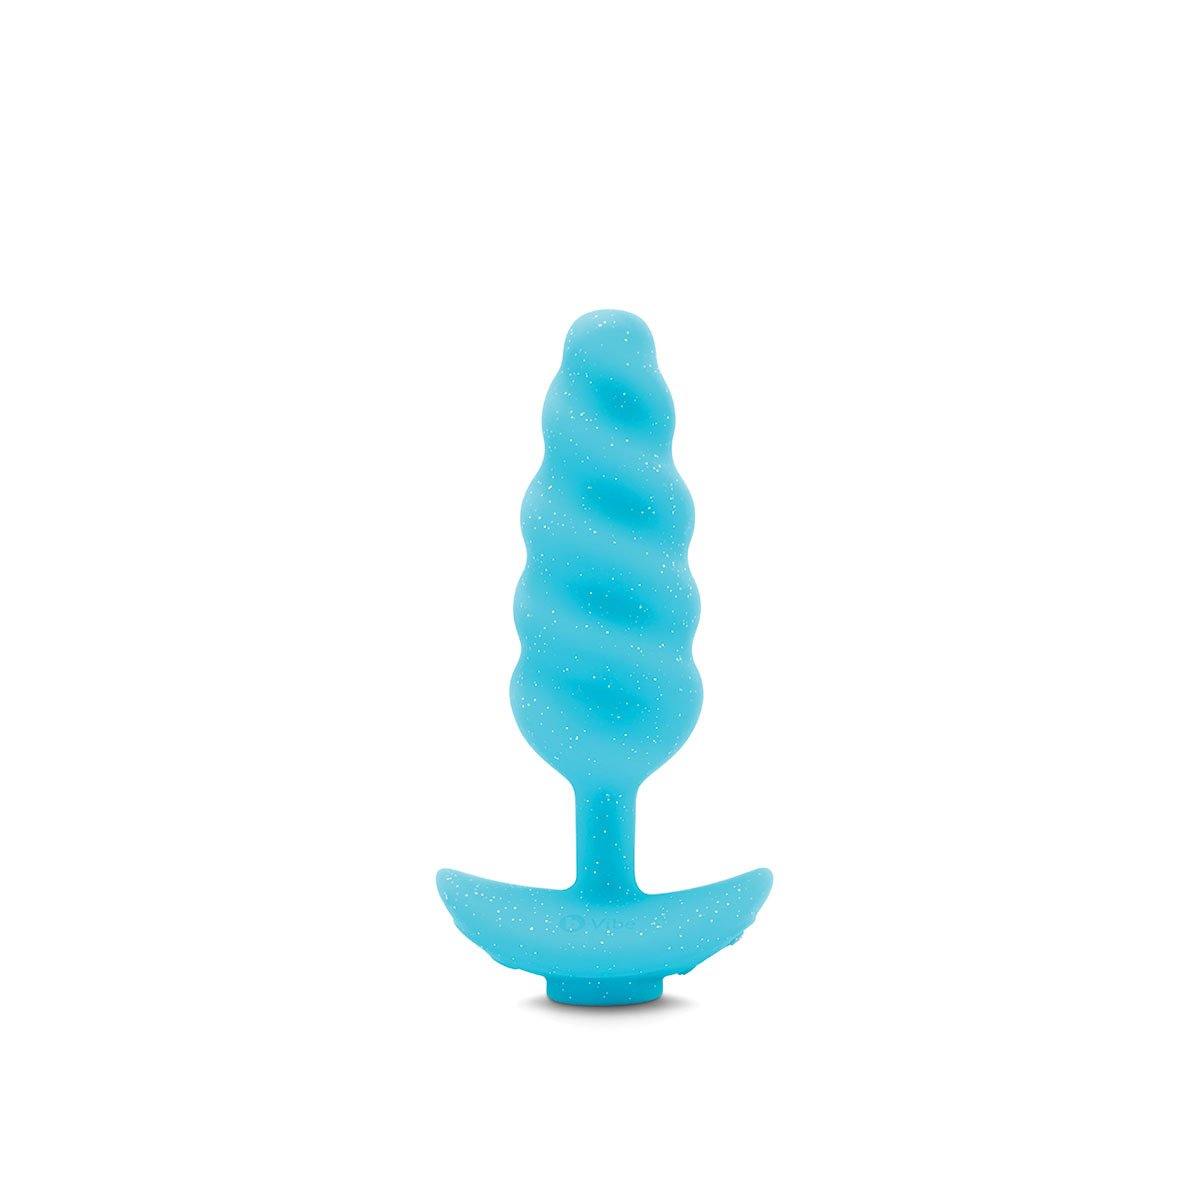 B-Vibe Unicorn Plug 6pc Set - Buy At Luxury Toy X - Free 3-Day Shipping